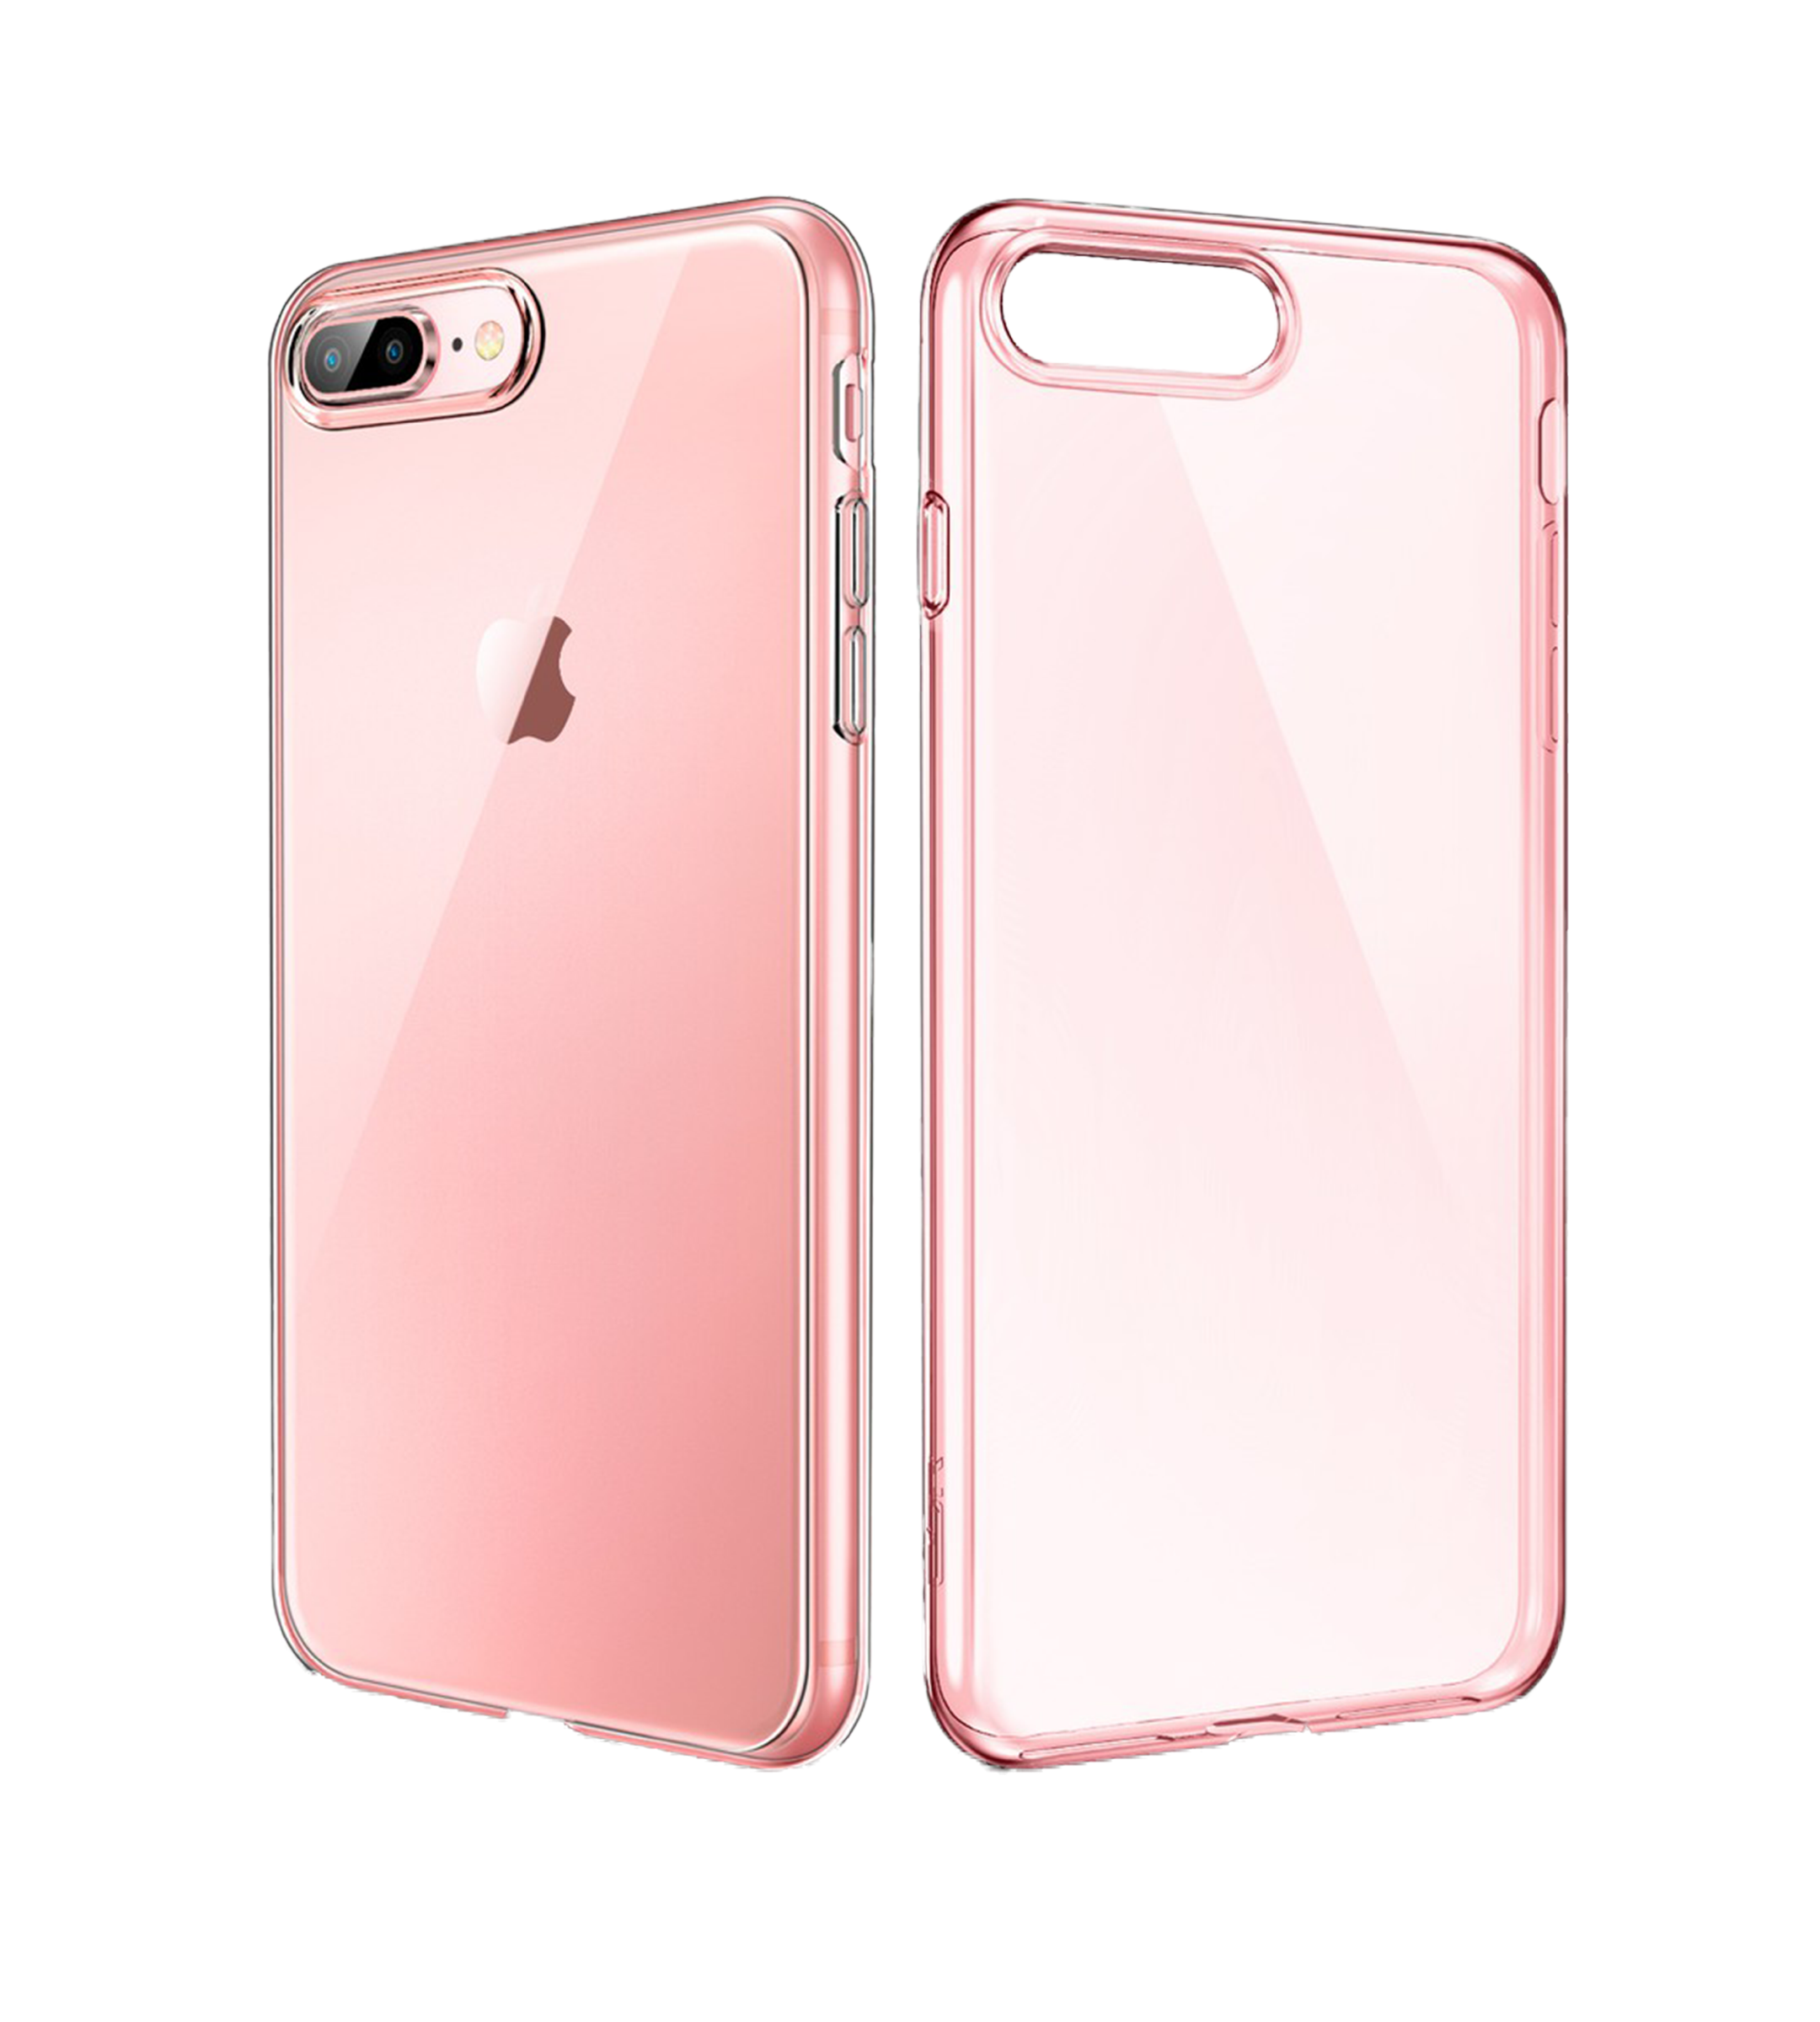 Funda de silicona iPhone 7 Plus / iPhone 8 Plus (rosa) 